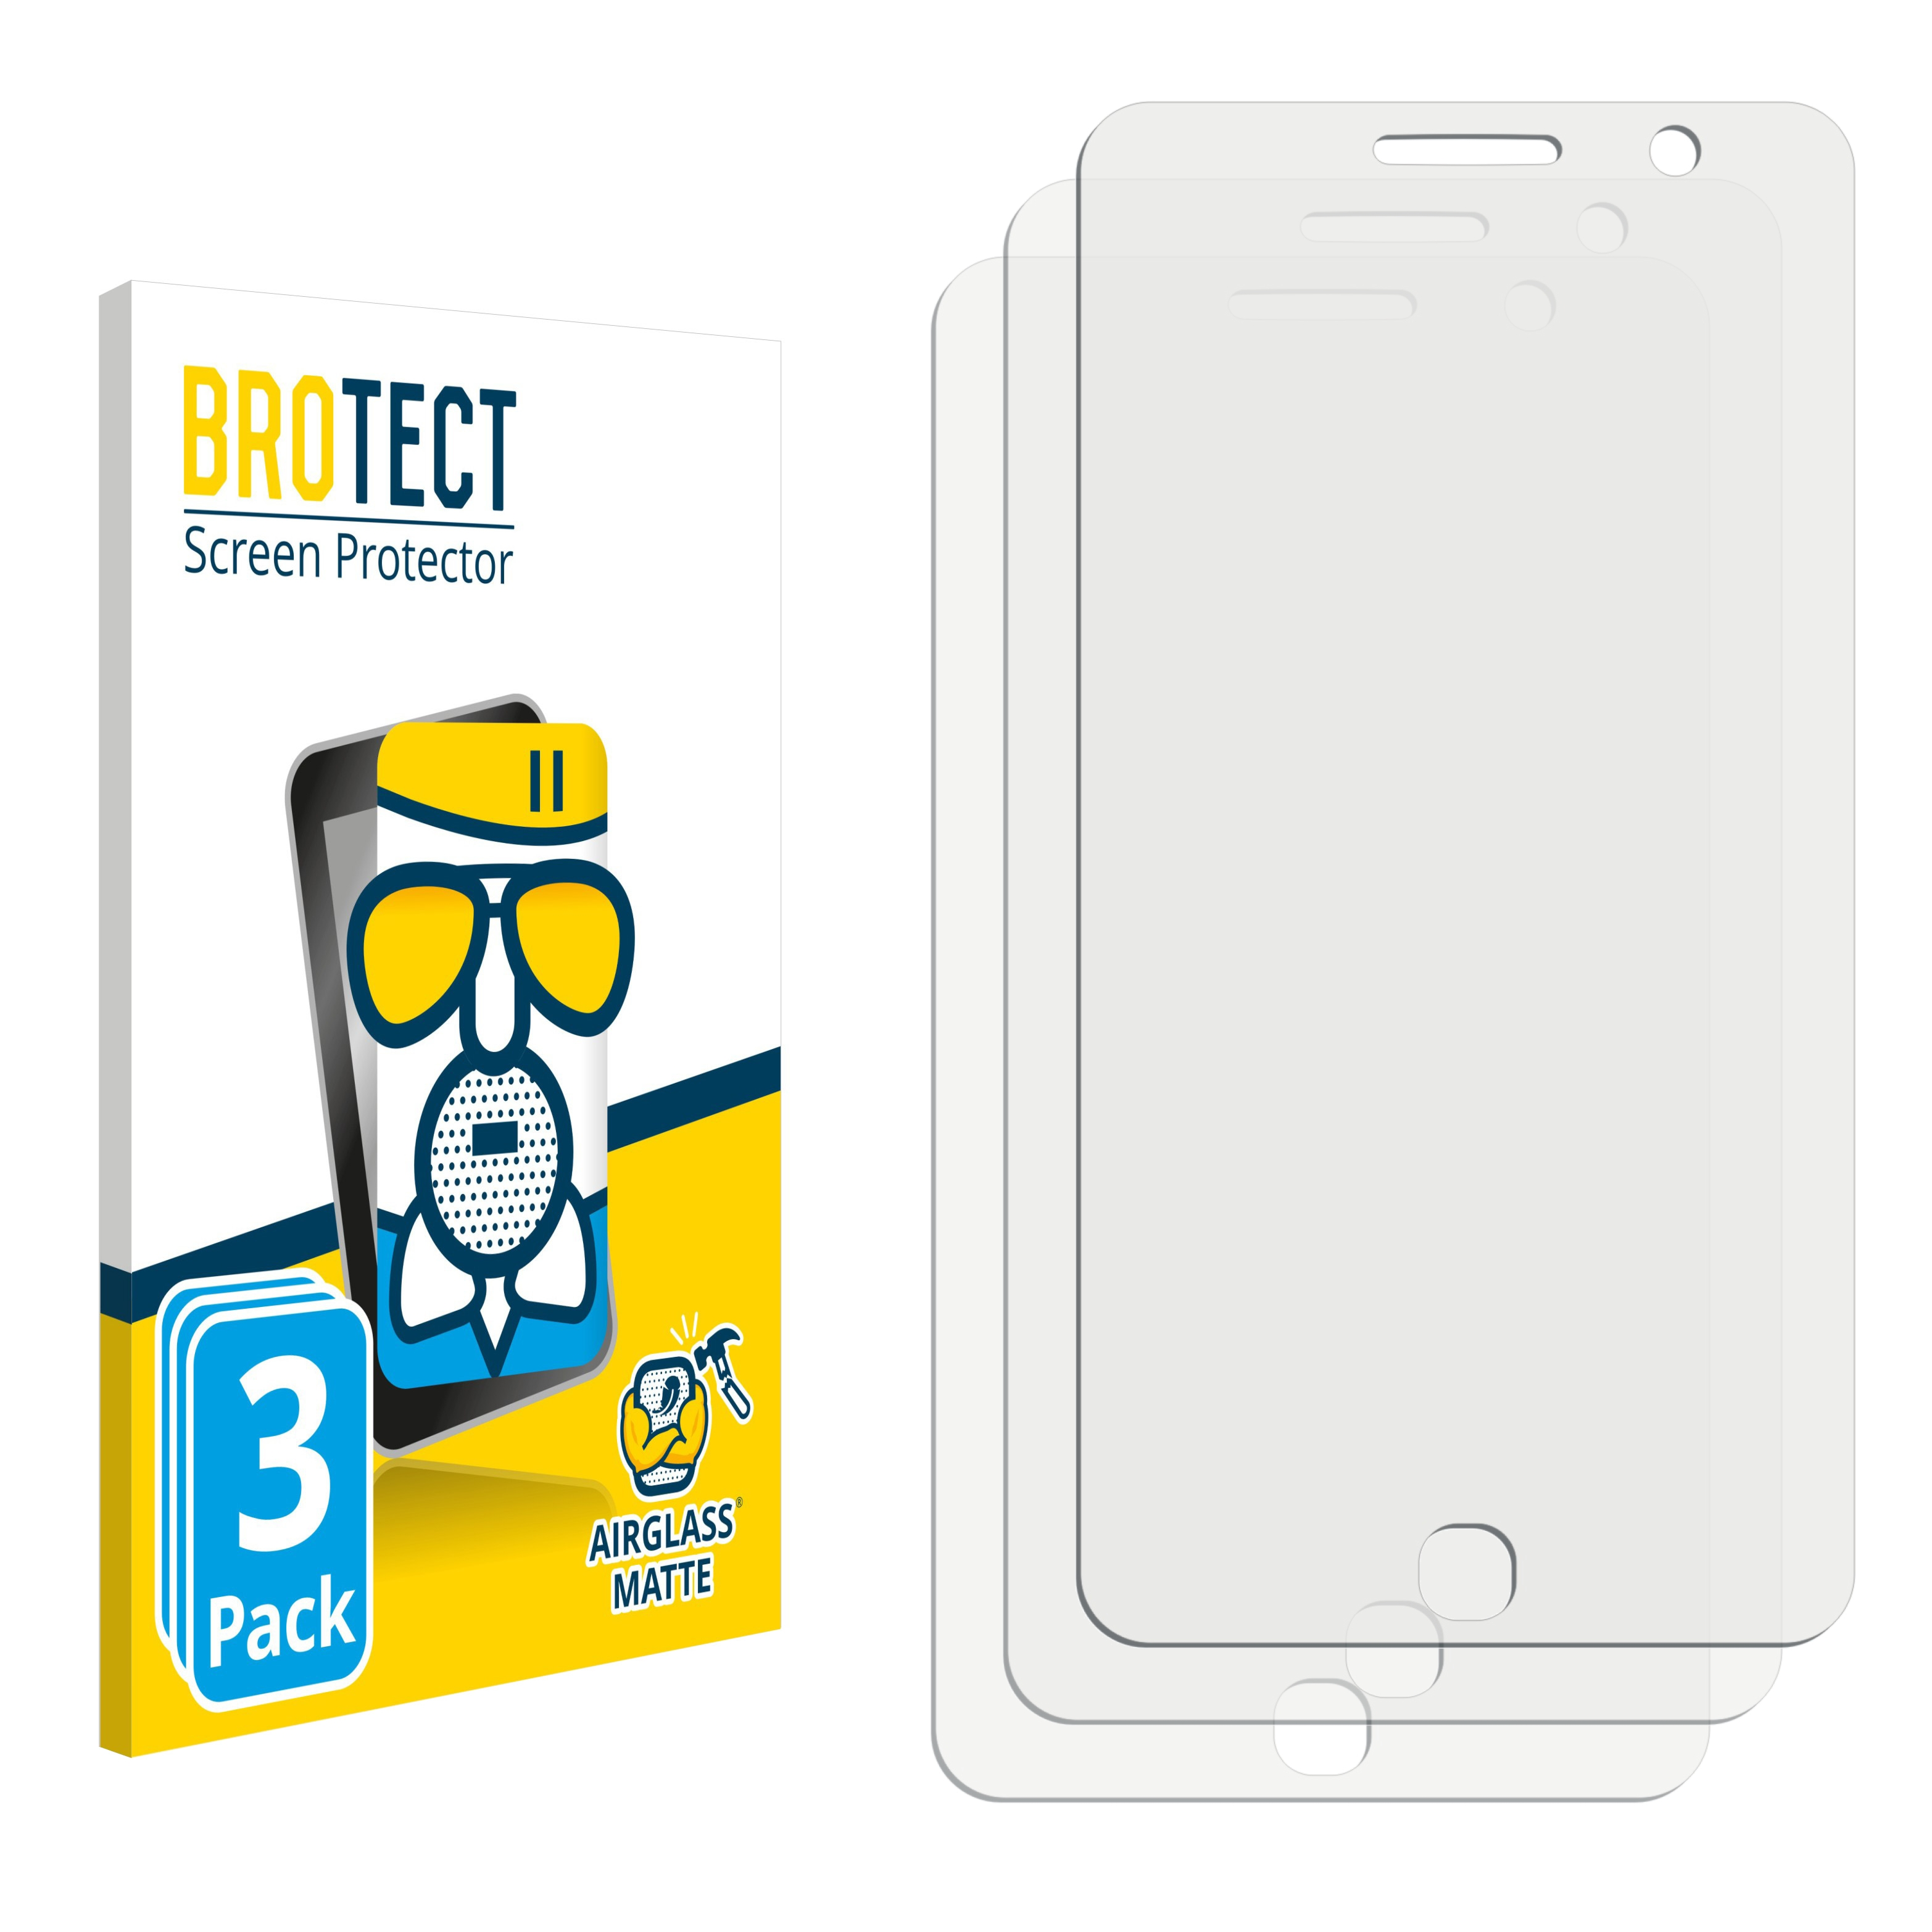 3x Airglass matte Pop One BROTECT 4G) Touch Star Alcatel Schutzfolie(für